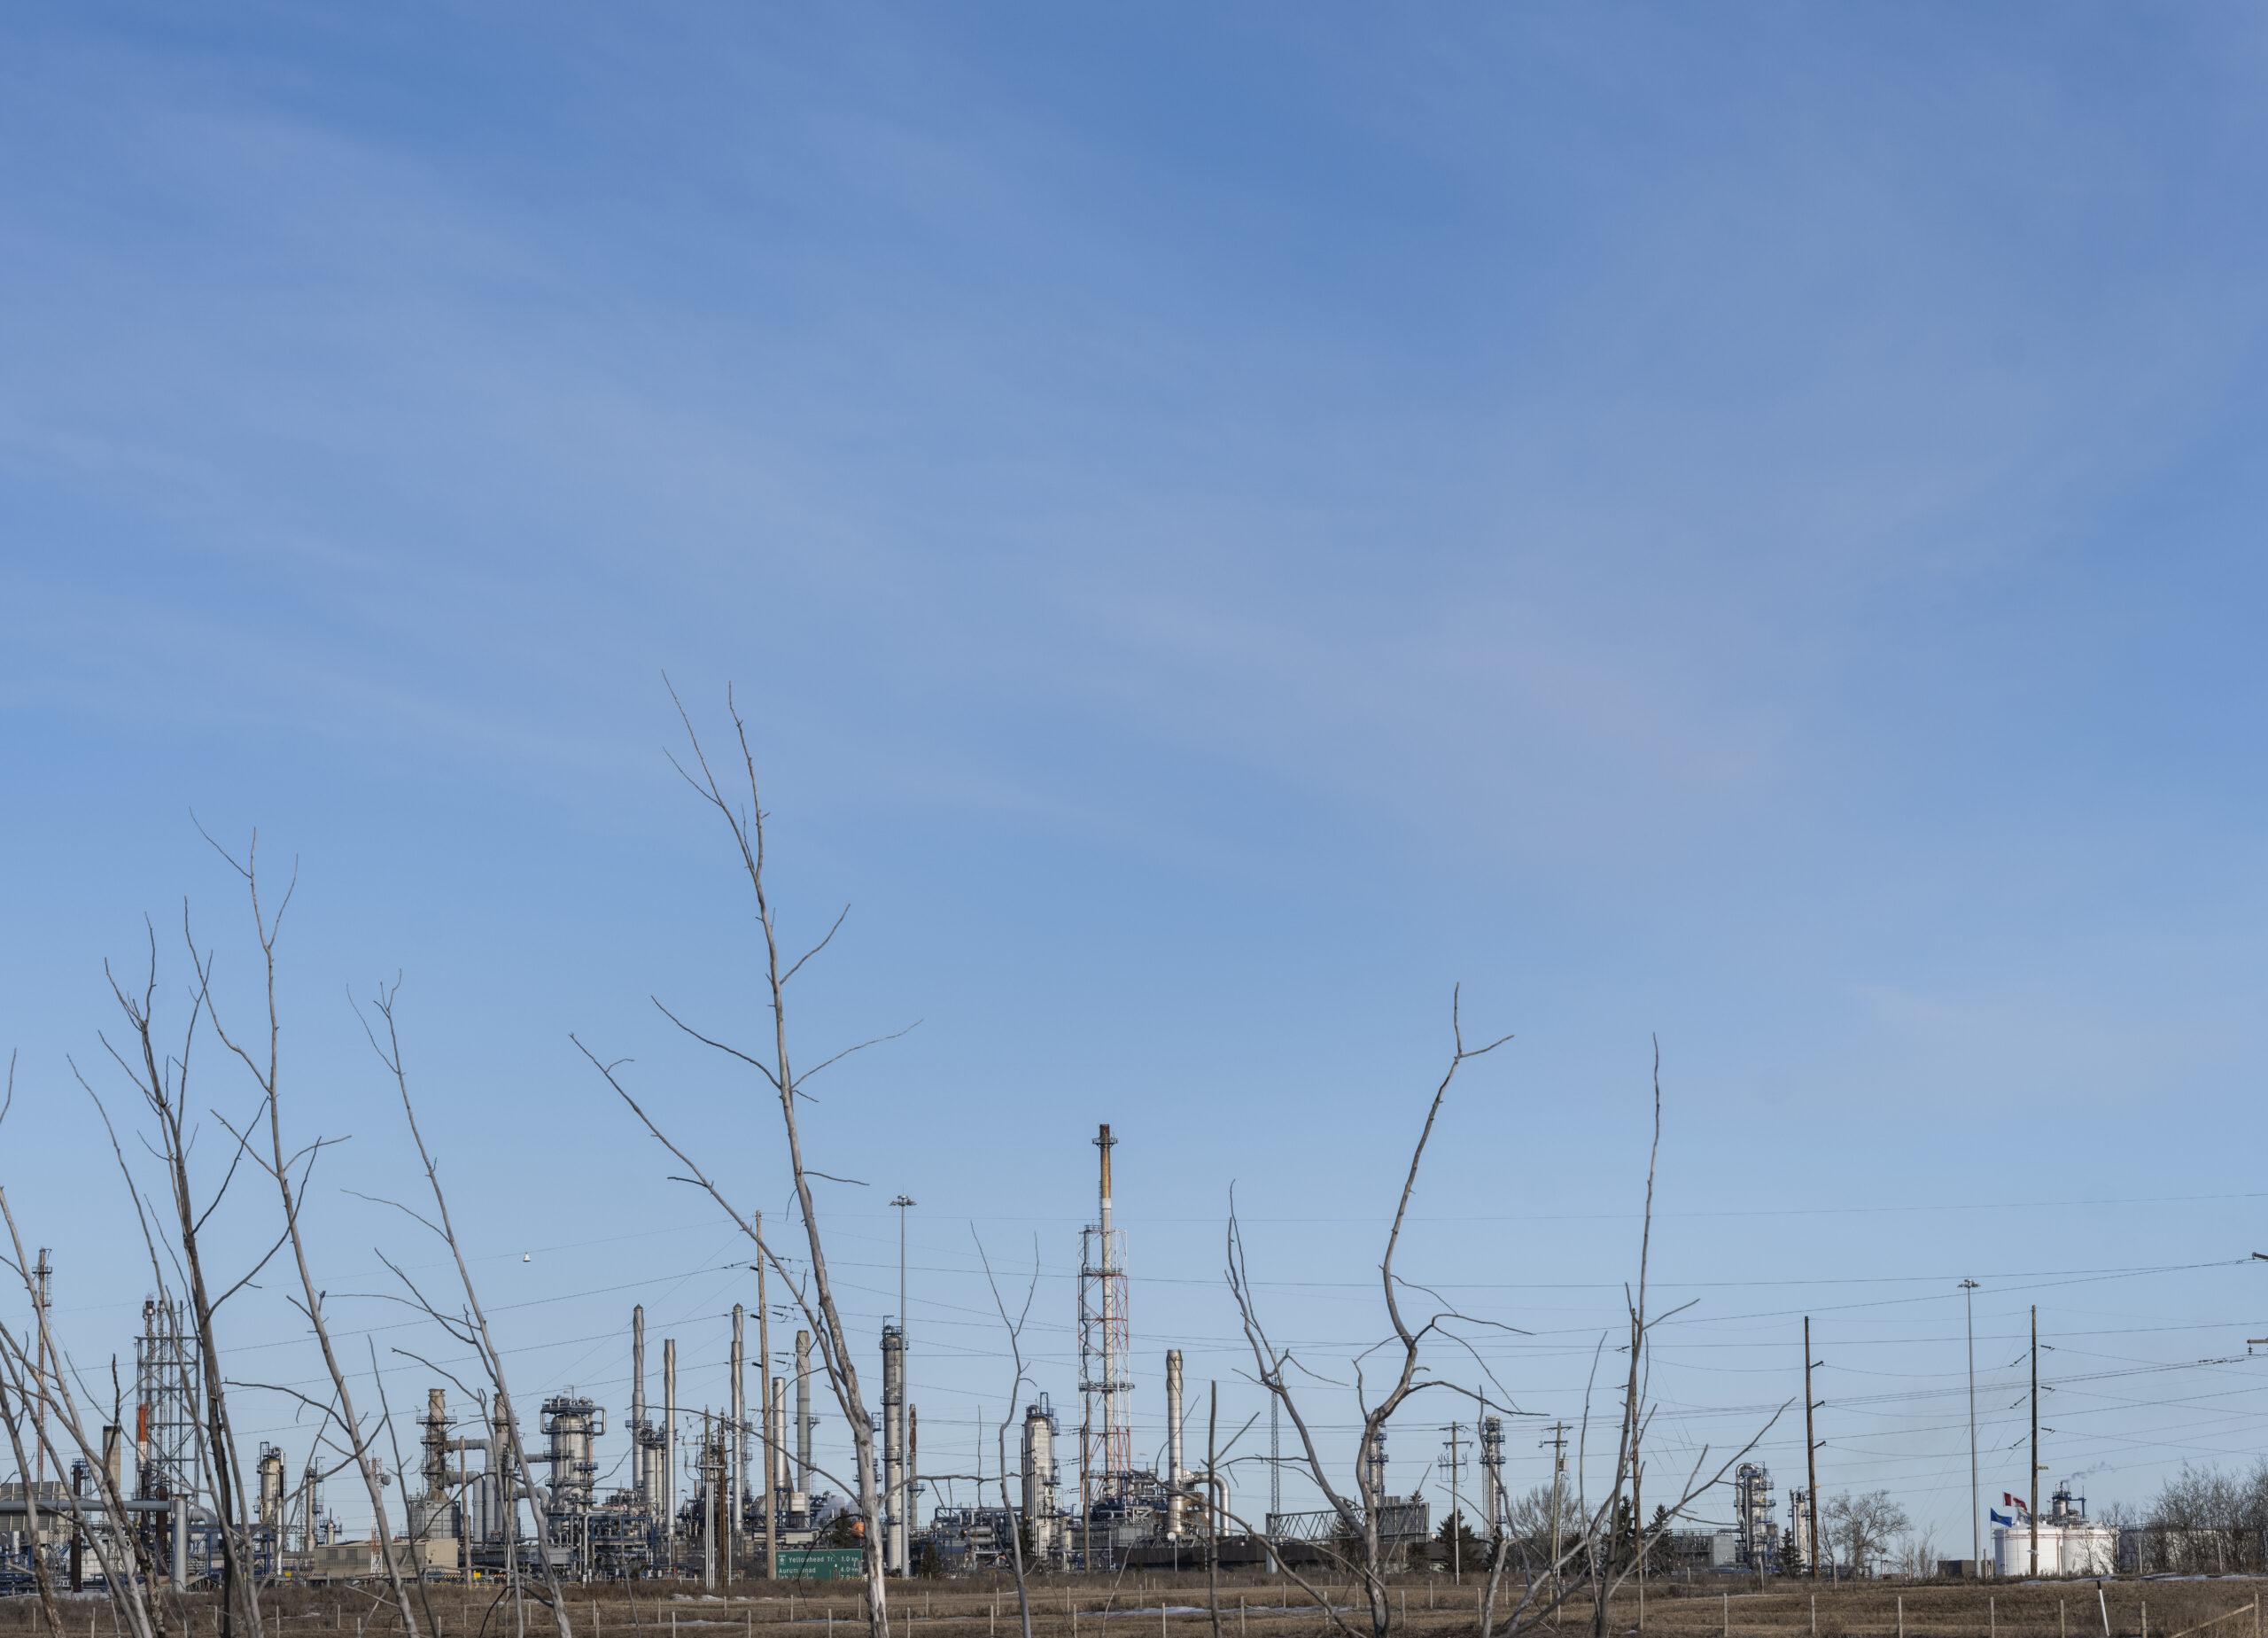 Suncor's Edmonton refinery low on the horizon.